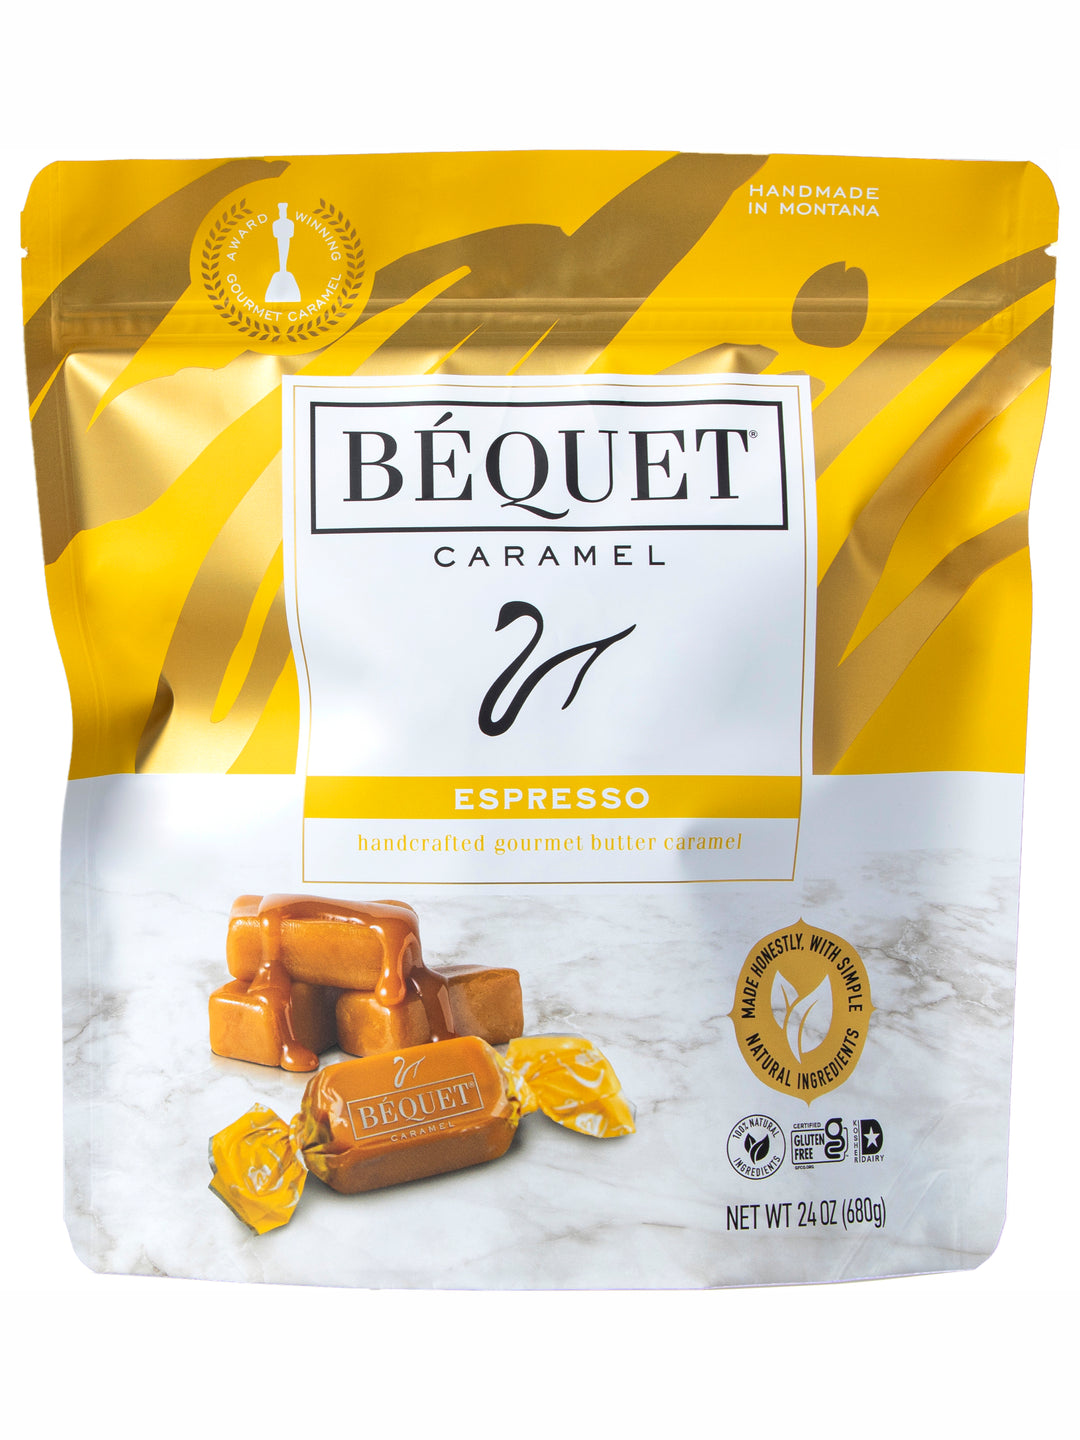 classic bequet caramel#caramel-variety_espresso